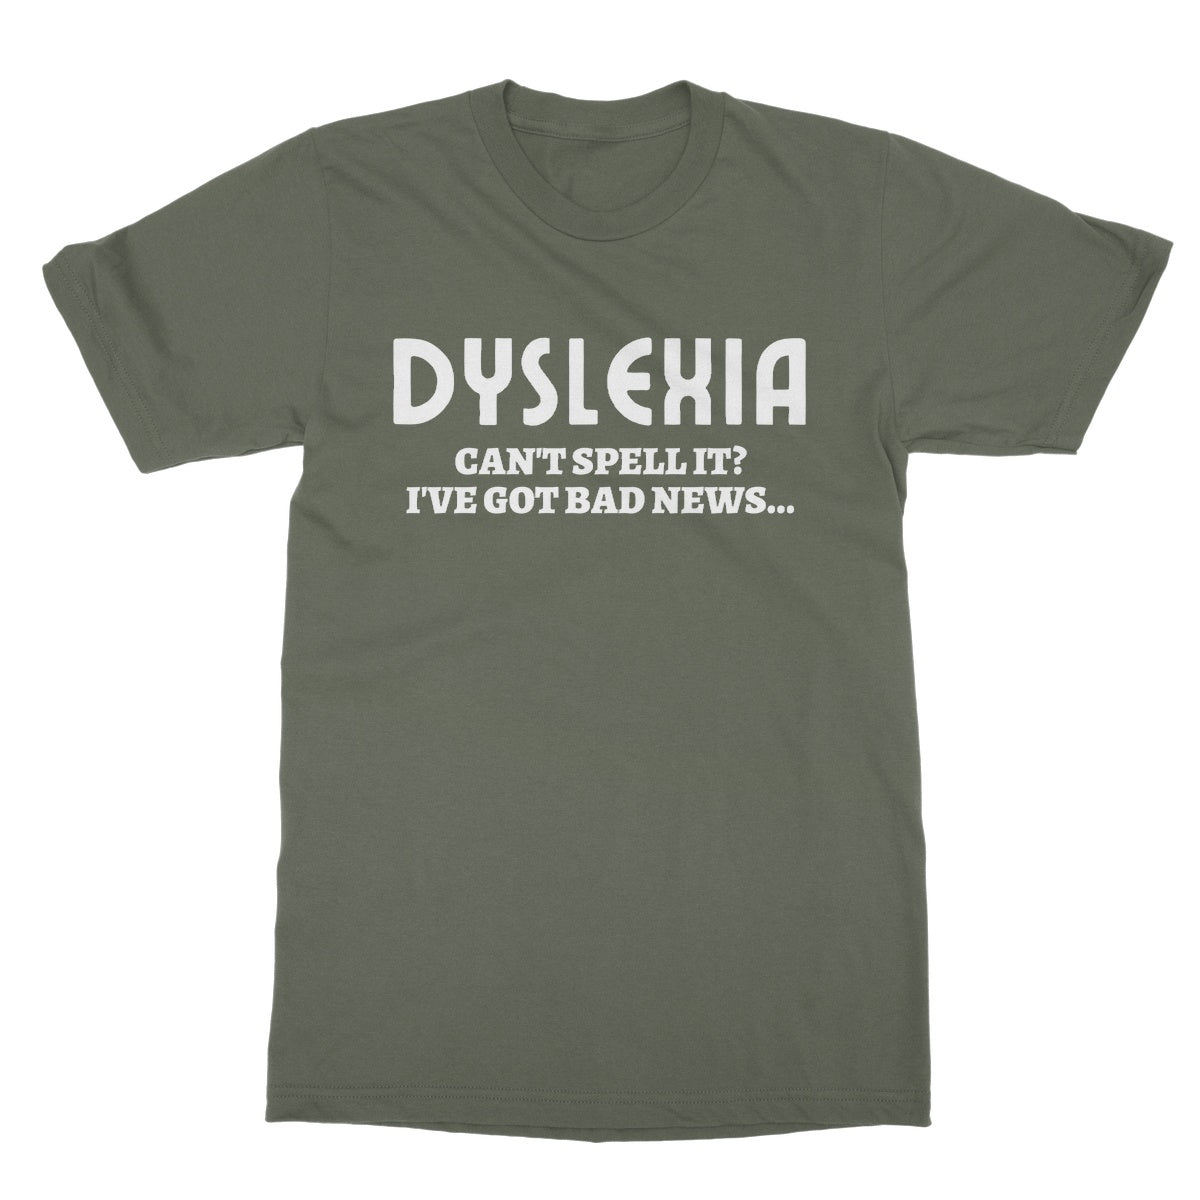 dyslexia t shirt green